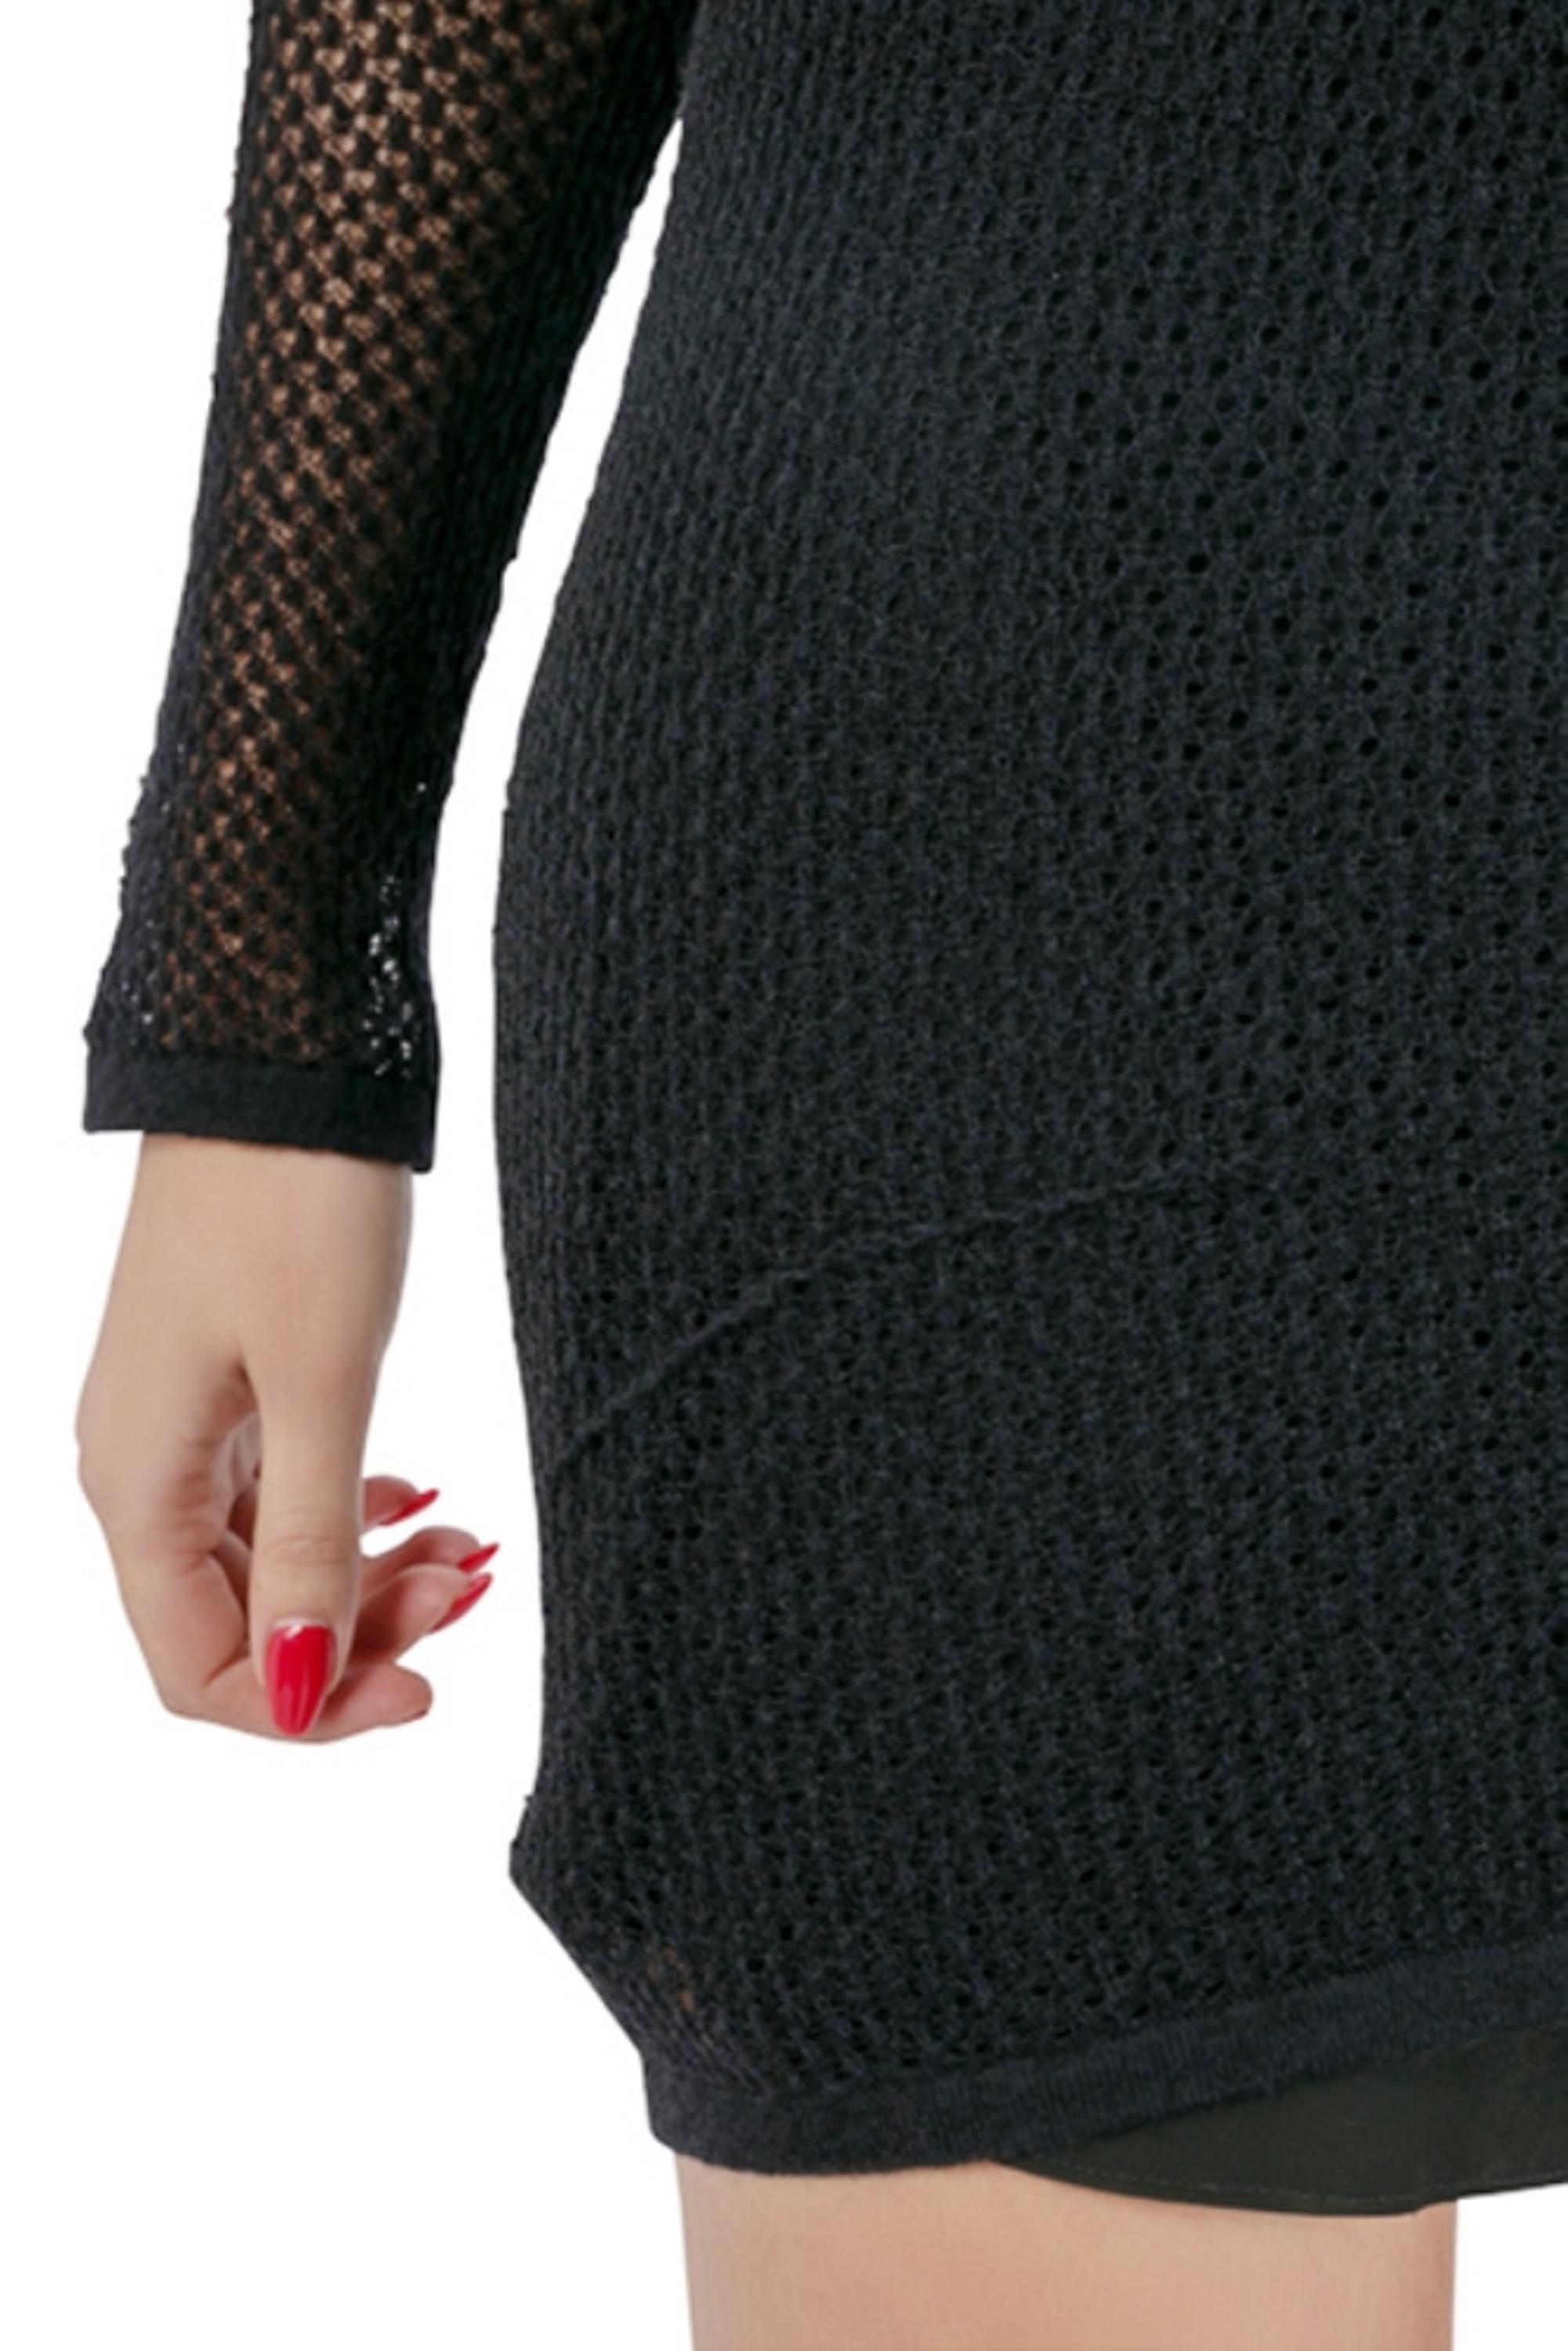 Saint Laurent Paris Black Perforated Knit Mesh Long Sleeve Dress S 1